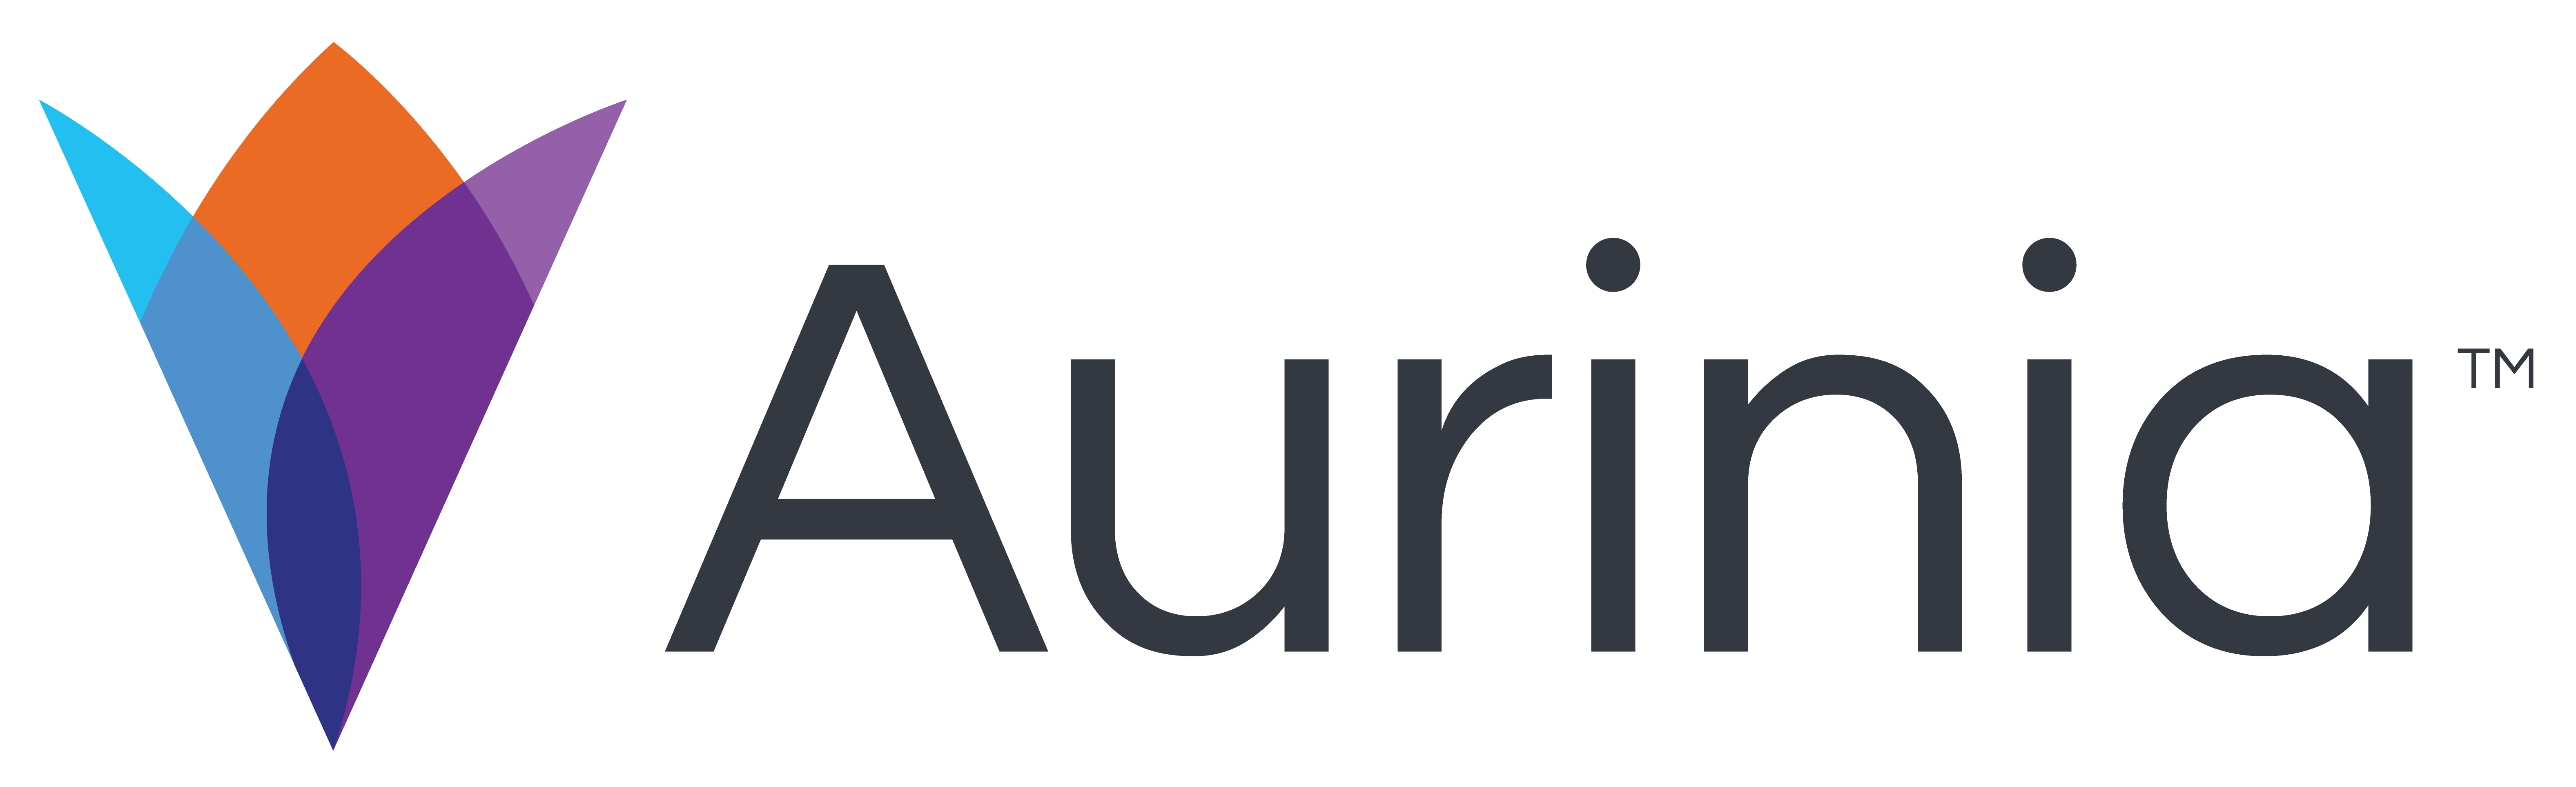 Aurinia logo